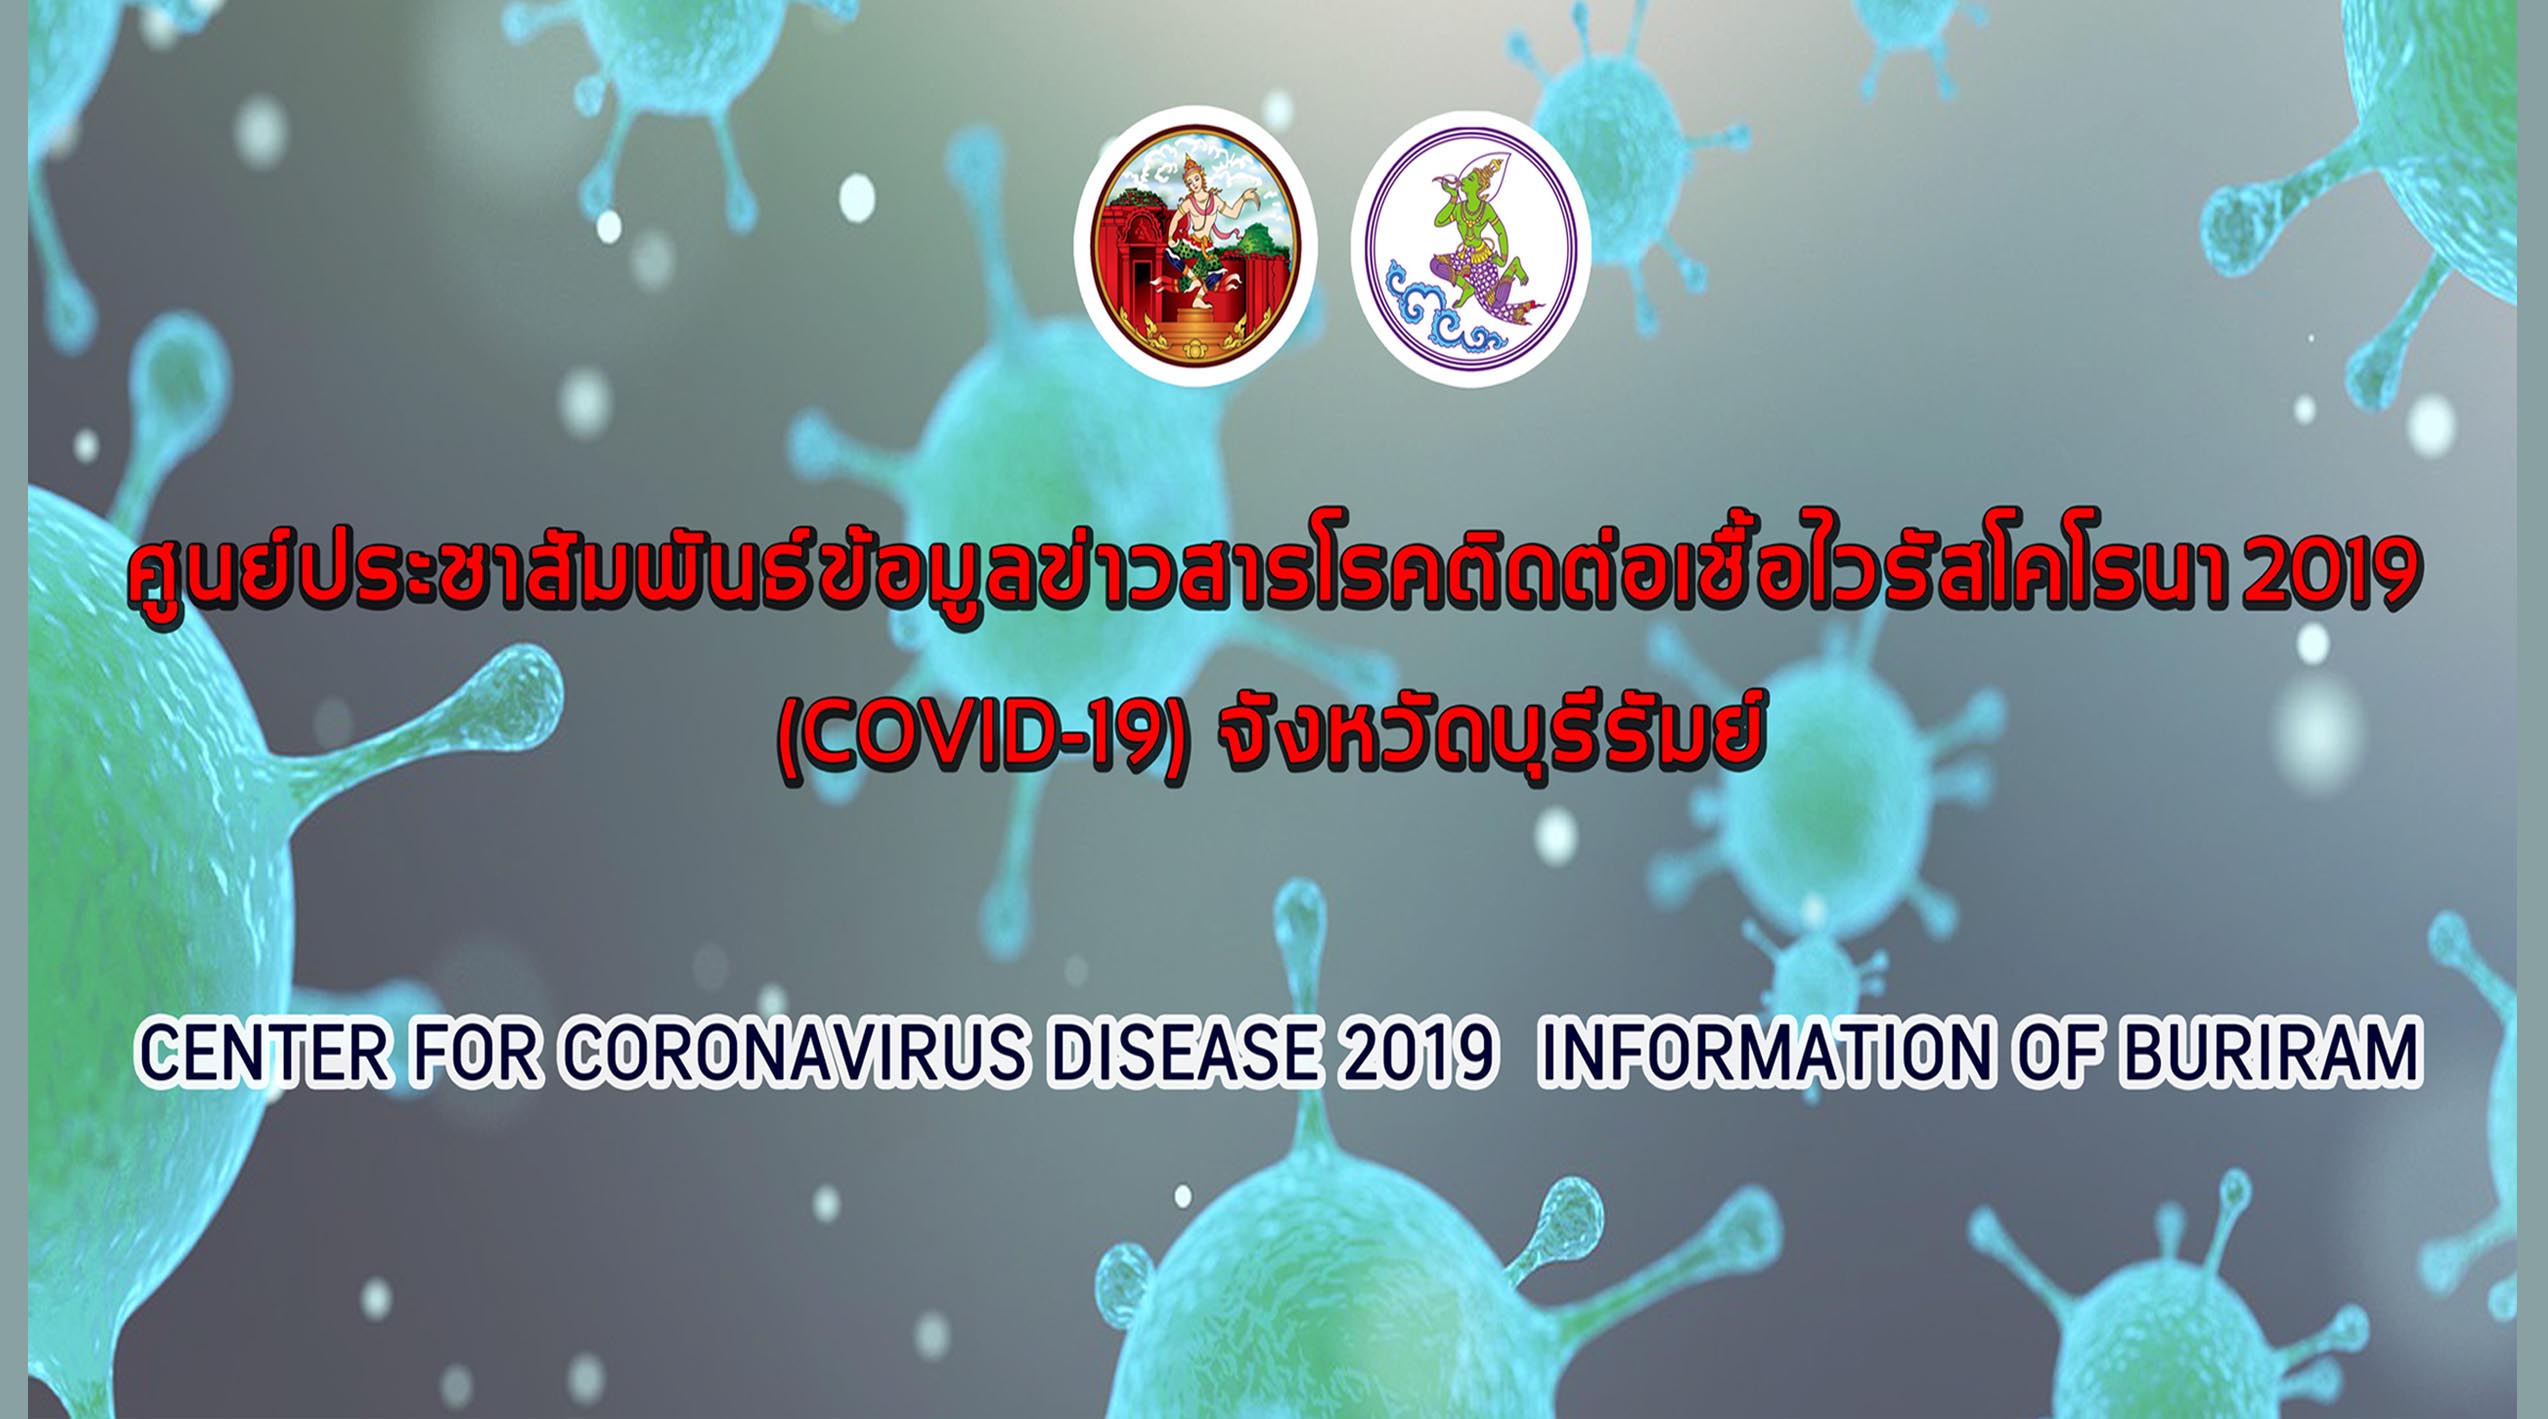 ศูนย์ประชาสัมพันธ์ข้อมูลข่าวสารโรคติดเชื้อไวรัสโคโรนา 2019 (COVID-19) จังหวัดบุรีรัมย์